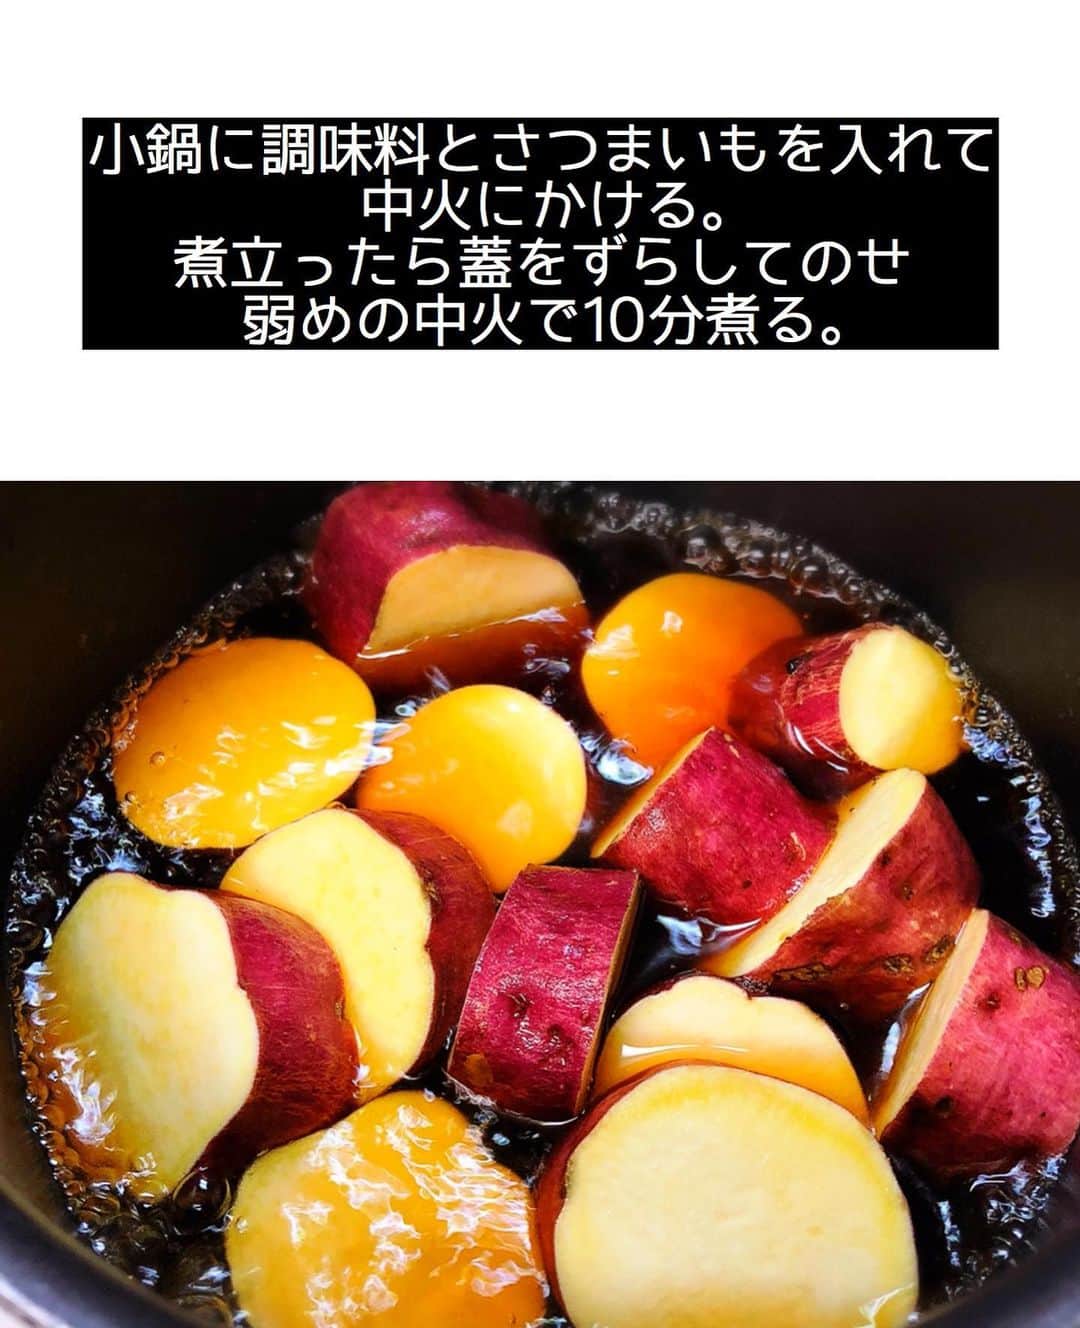 Mizuki【料理ブロガー・簡単レシピ】さんのインスタグラム写真 - (Mizuki【料理ブロガー・簡単レシピ】Instagram)「・ 【#レシピ 】ーーーーーーーーーーー 10分煮るだけ！さつまいもの甘辛煮 ーーーーーーーーーーーーーーーーー ⁡ 　 ⁡ おはようございます(*^^*) ⁡ 今日も引き続き🍠レシピ♡ ライブで作らせていただいた \ さつまいもの甘辛煮 / を テキストでご紹介します♩ ⁡ ⁡ お鍋に材料を入れたら ほぼ放置の超簡単レシピ！！ ほっこりと甘い煮物は 箸休めにぴったりですし お弁当にもおすすめです(*´艸`) 仕上げにバターを加えると コク深い味わいに仕上がりますよ〜♡ ⁡ これからの季節におすすめなので よかったらお試し下さいね(*^^*) ⁡ ⁡ ⁡ ＿＿＿＿＿＿＿＿＿＿＿＿＿＿＿＿＿＿＿＿＿ 【作りやすい量】 さつまいも...1本(250〜300g) ●水...200ml ●砂糖...大1.5 ●醤油...大1 バター...10g (あれば)黒ごま...適量 ⁡ 1.さつまいもは2cm幅の輪切り(大きければ半月切り)にし、水に5分晒して水気を切る。 2.小鍋に●と1を入れて中火にかける。煮立ったら蓋を少しずらしてのせ、弱めの中火で10分煮る。 3.さつまいもが柔らかくなったら火を止め、バターを加えて余熱で溶かす。器に盛り、黒ごまをトッピングする。 ￣￣￣￣￣￣￣￣￣￣￣￣￣￣￣￣￣￣￣￣￣ ⁡ ⁡ ⁡ 《ポイント》 ♦︎直径16cmの鍋を使用しています♩ ♦︎なるべくいじらずに煮て下さい☆ ♦︎一度冷ますとより味が染みます♩ ♦︎冷蔵庫で3〜4日保存できます☆ ♦︎作り置きやお弁当に入れる場合、お好みでバターは無しでもOKです♩ ⁡ ⁡ ⁡ ⁡ ⁡ ⁡ ⁡ \ 新刊予約開始しました /(9月24日発売) ⁡ 🔹🔹🔹🔹🔹🔹🔹🔹🔹🔹🔹🔹 今日のごはんこれに決まり！ #Mizukiのレシピノート 決定版 500品 🔹🔹🔹🔹🔹🔹🔹🔹🔹🔹🔹🔹 ⁡ 総レシピ6000点の中からレシピを厳選！ まさかの【500レシピ掲載】しました⭐️ (もはや辞典...) ⁡ 肉や魚のメインおかずはもちろん 副菜、丼、麺、スープ、お菓子 ハレの日のレシピ、鍋のレシピまで 全てこの一冊で完結！！ ⁡ ⁡ 🎁新刊予約でエプロンが当たる🎁 プレゼントキャンペーン実施中 ￣￣￣￣￣￣￣￣￣￣￣￣￣￣￣￣￣￣￣￣￣ 【応募方法】 ❶1枚目に表紙画像 2枚目にAmazonで予約したことがわかる画像 (どちらもスクショでOK)を貼りつける。 ❷ハッシュタグ【#Mizukiのレシピノート 】 をつけて投稿！ ￣￣￣￣￣￣￣￣￣￣￣￣￣￣￣￣￣￣￣￣￣￣ ⁡ ⁡ ⁡ ⁡ ⁡ ＿＿＿＿＿＿＿＿＿＿＿＿＿＿＿＿ 🟥YouTube 料理動画配信中🟥 ￣￣￣￣￣￣￣￣￣￣￣￣￣￣￣￣ 料理とお菓子の簡単レシピを ご紹介しています☺️💓 ⁡ 【奇跡のキッチン】で検索🔍 (ハイライトからも飛べます✨) ￣￣￣￣￣￣￣￣￣￣￣￣￣￣￣￣ ⁡ ⁡ ⁡ ＿＿＿＿＿＿＿＿＿＿＿＿＿＿＿＿ 🔶🔶recipe book🔶🔶 ￣￣￣￣￣￣￣￣￣￣￣￣￣￣￣￣ ホケミレシピの決定版♩ \はじめてでも失敗しない/ 📙#ホットケーキミックスのお菓子 ⁡ NHKまる得マガジンテキスト☆ #ホットケーキミックス で ⁡ 📗絶品おやつ&意外なランチ ⁡ しんどくない献立、考えました♩ \𝟣𝟧分でいただきます/ 📕#Mizukiの2品献立 ⁡ 和食をもっとカジュアルに♩ \毎日のごはんがラクになる/ 📘#Mizukiの今どき和食  ＿＿＿＿＿＿＿＿＿＿＿＿＿＿＿＿＿ ⁡ ⁡ ⁡ ⁡ #さつまいもの甘辛煮m #さつまいも #煮物 #作り置き #お弁当 #mizuki #簡単レシピ #時短レシピ #節約レシピ #料理 #料理初心者  #時短ごはん #節約ごはん #フーディーテーブル #おうちごはん #デリスタグラマー #おうちごはんlover #料理好きな人と繋がりたい #写真好きな人と繋がりたい #foodpick#cooking#recipe #foodporn」8月24日 7時31分 - mizuki_31cafe